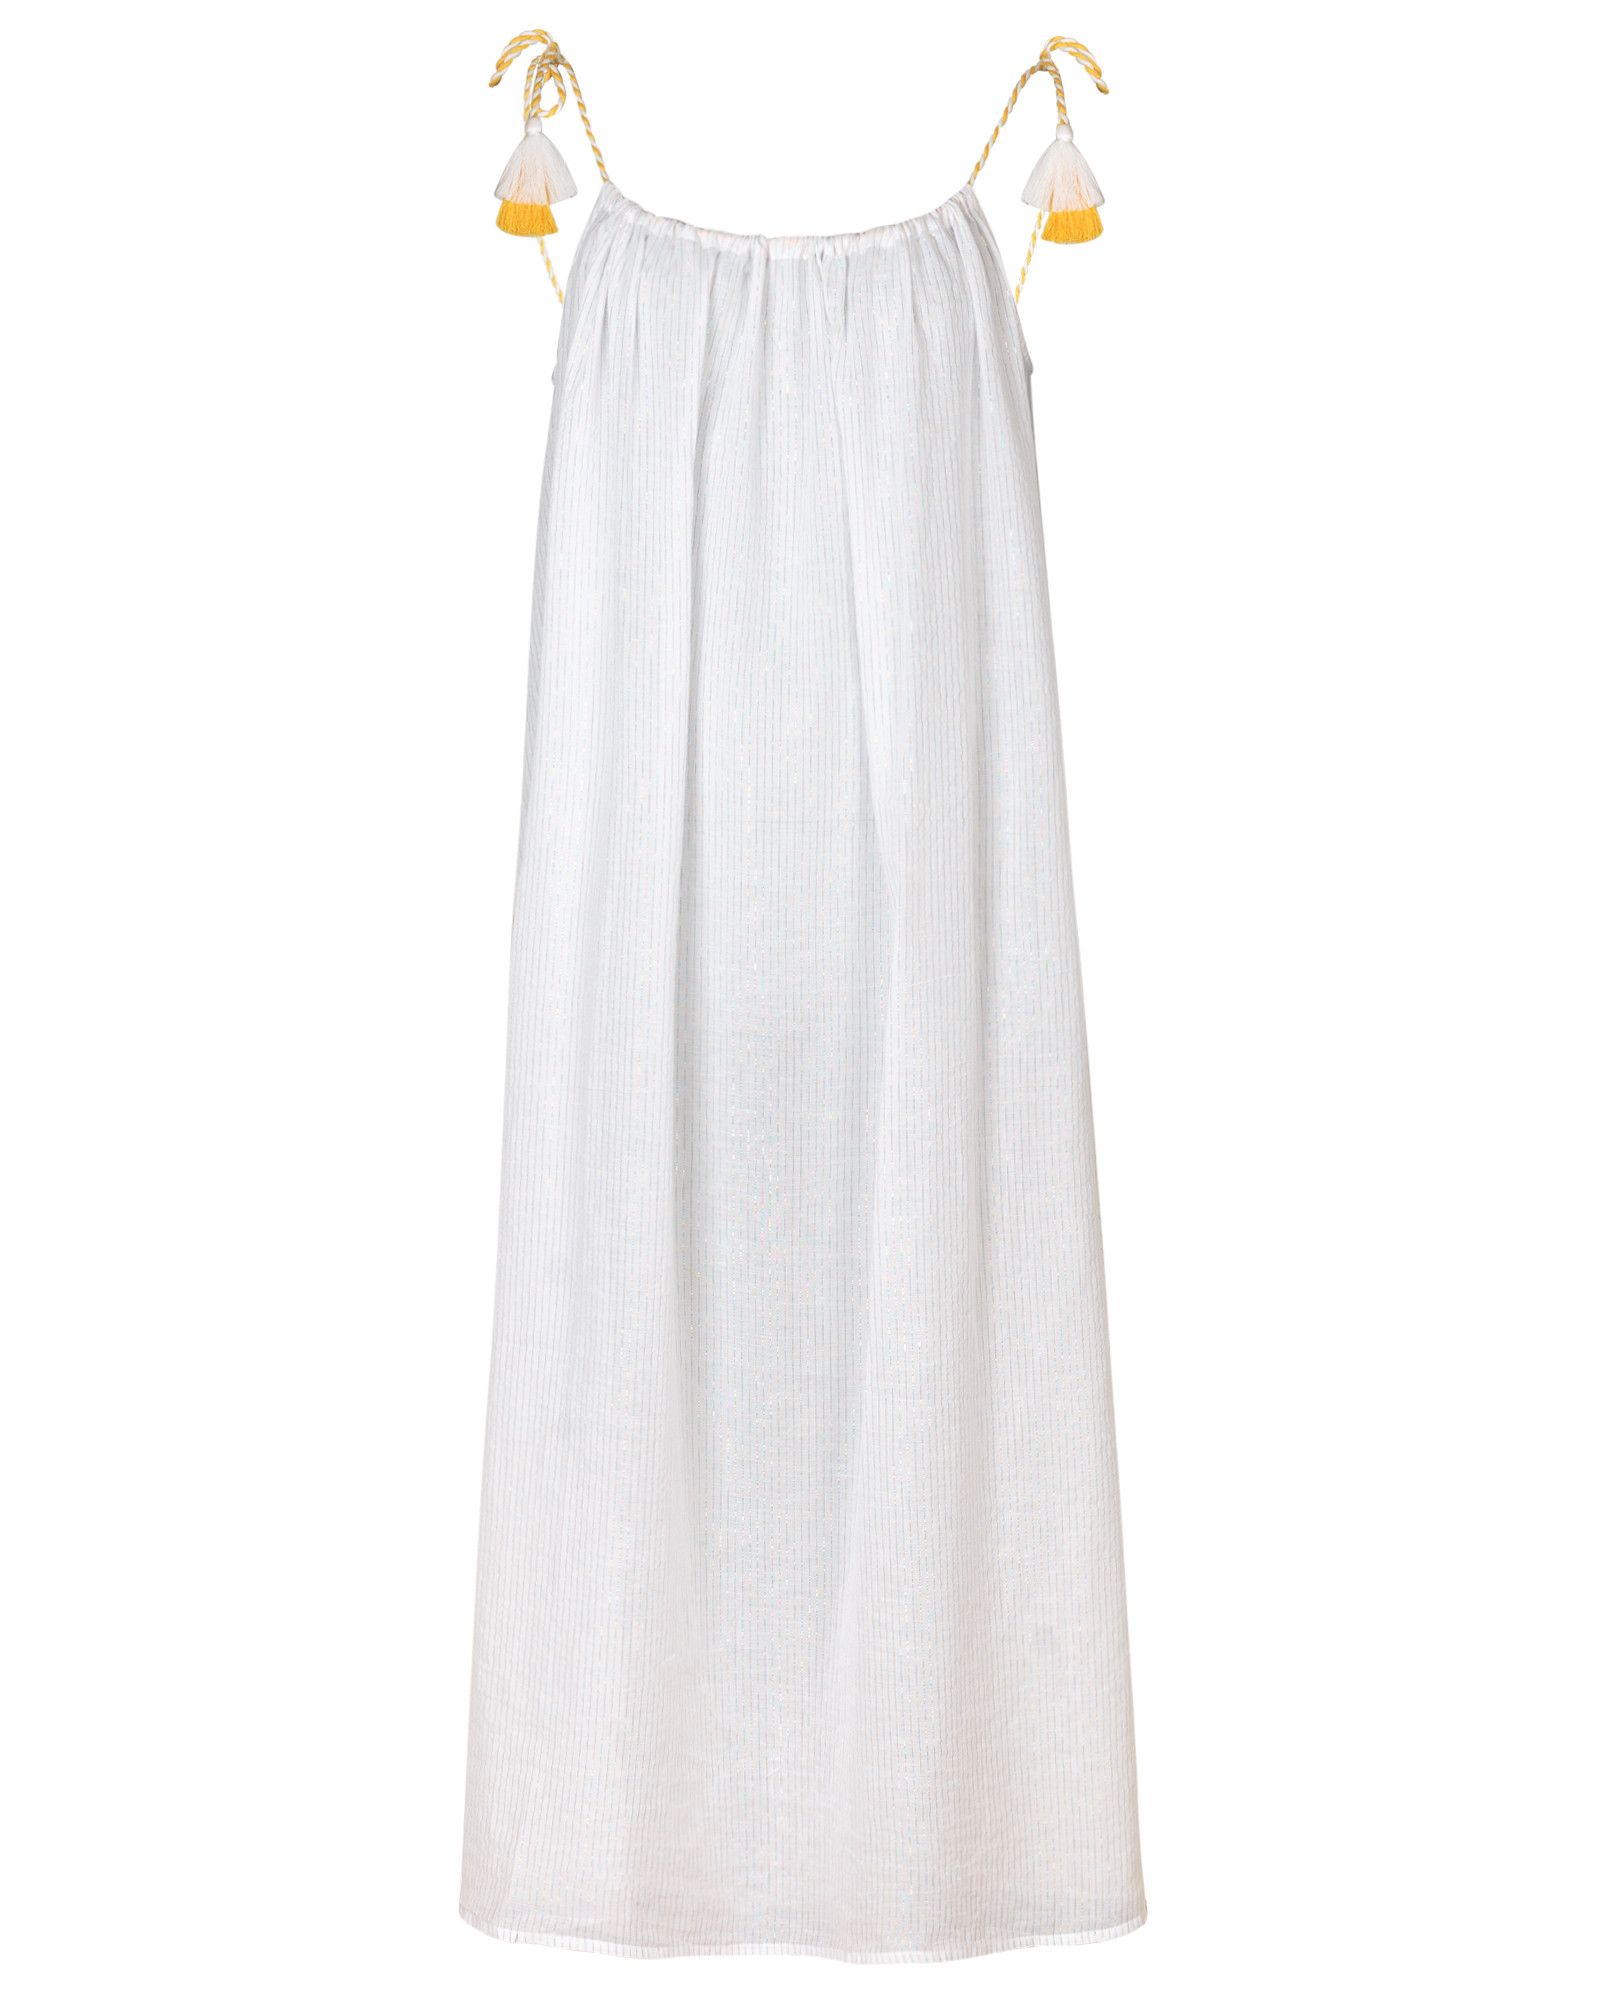 Pom Pom White Midi Beach Dress